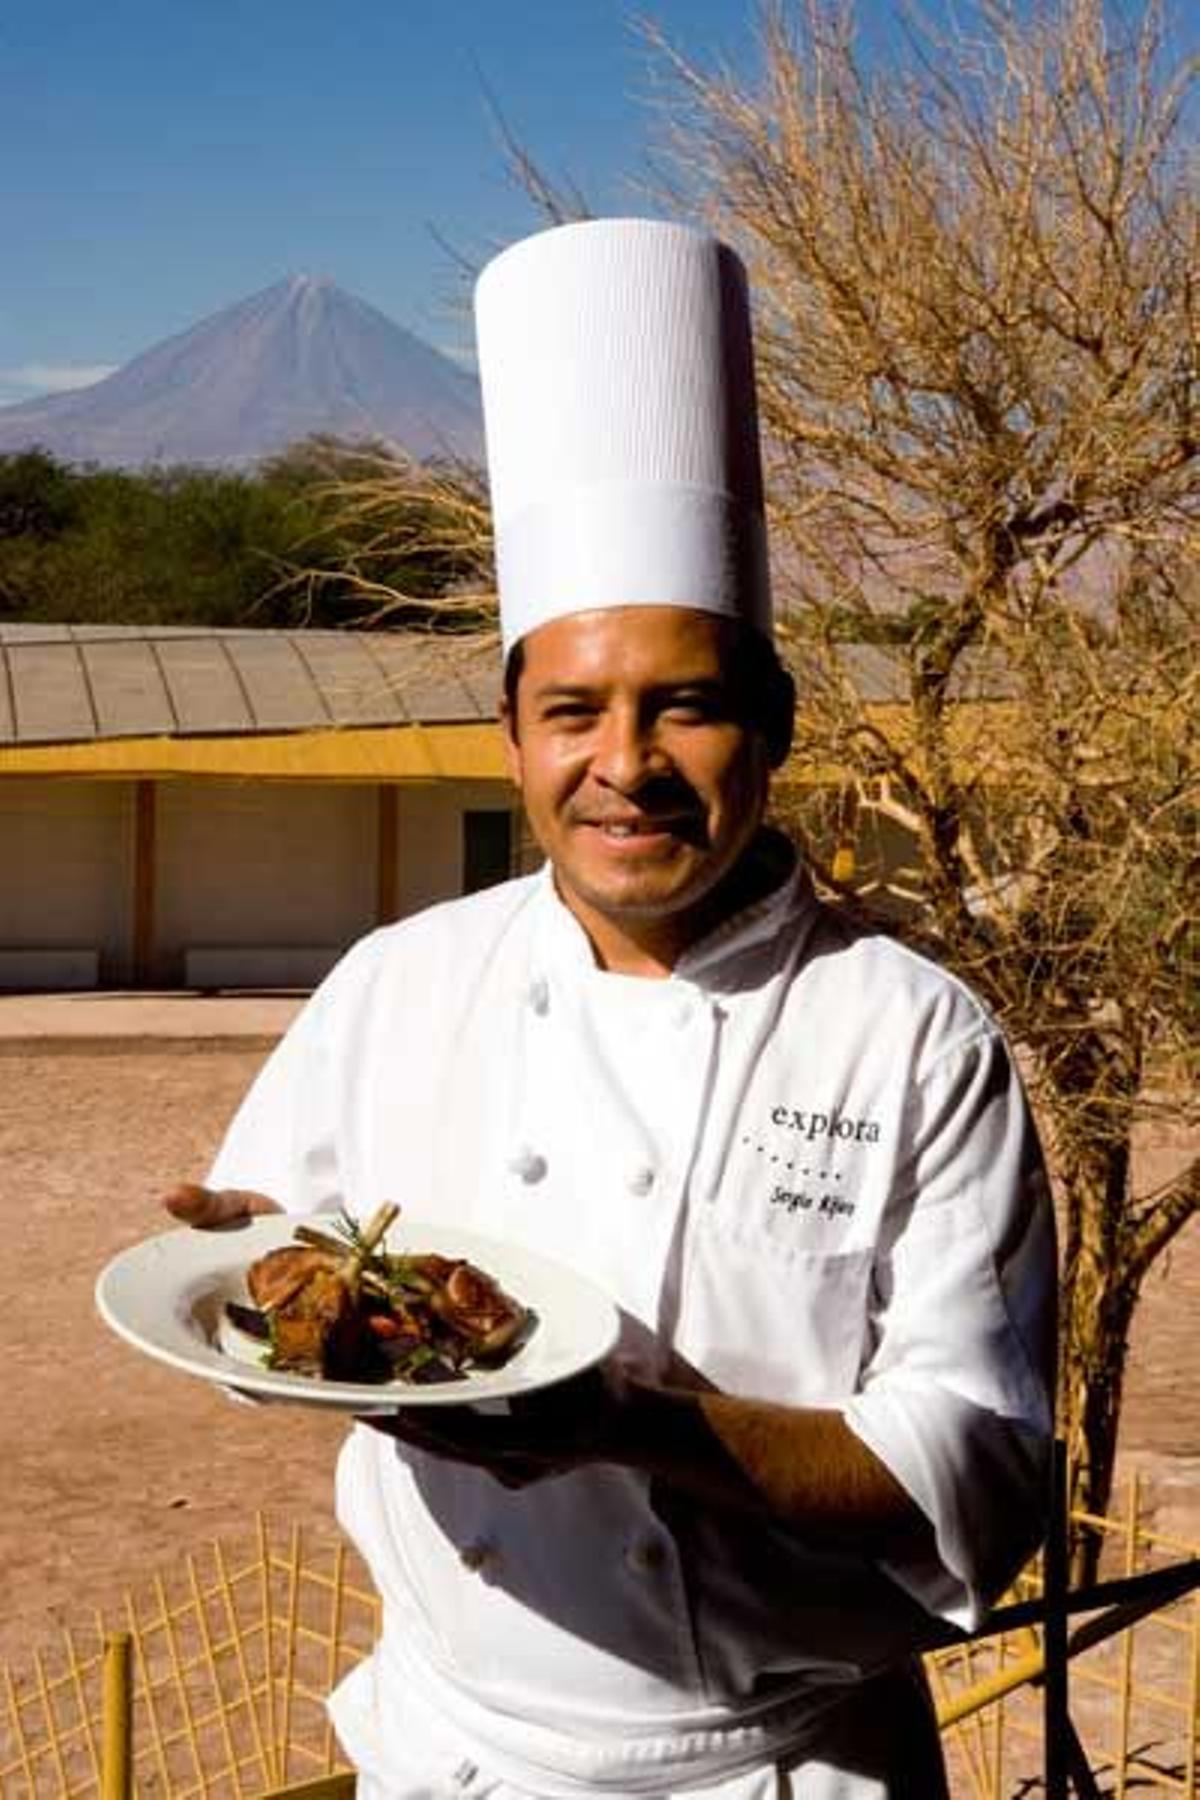 El cocinero de uno de los restaurantes de San Pedro de Atacama nos muestra uno de los platos típicos de la zona.